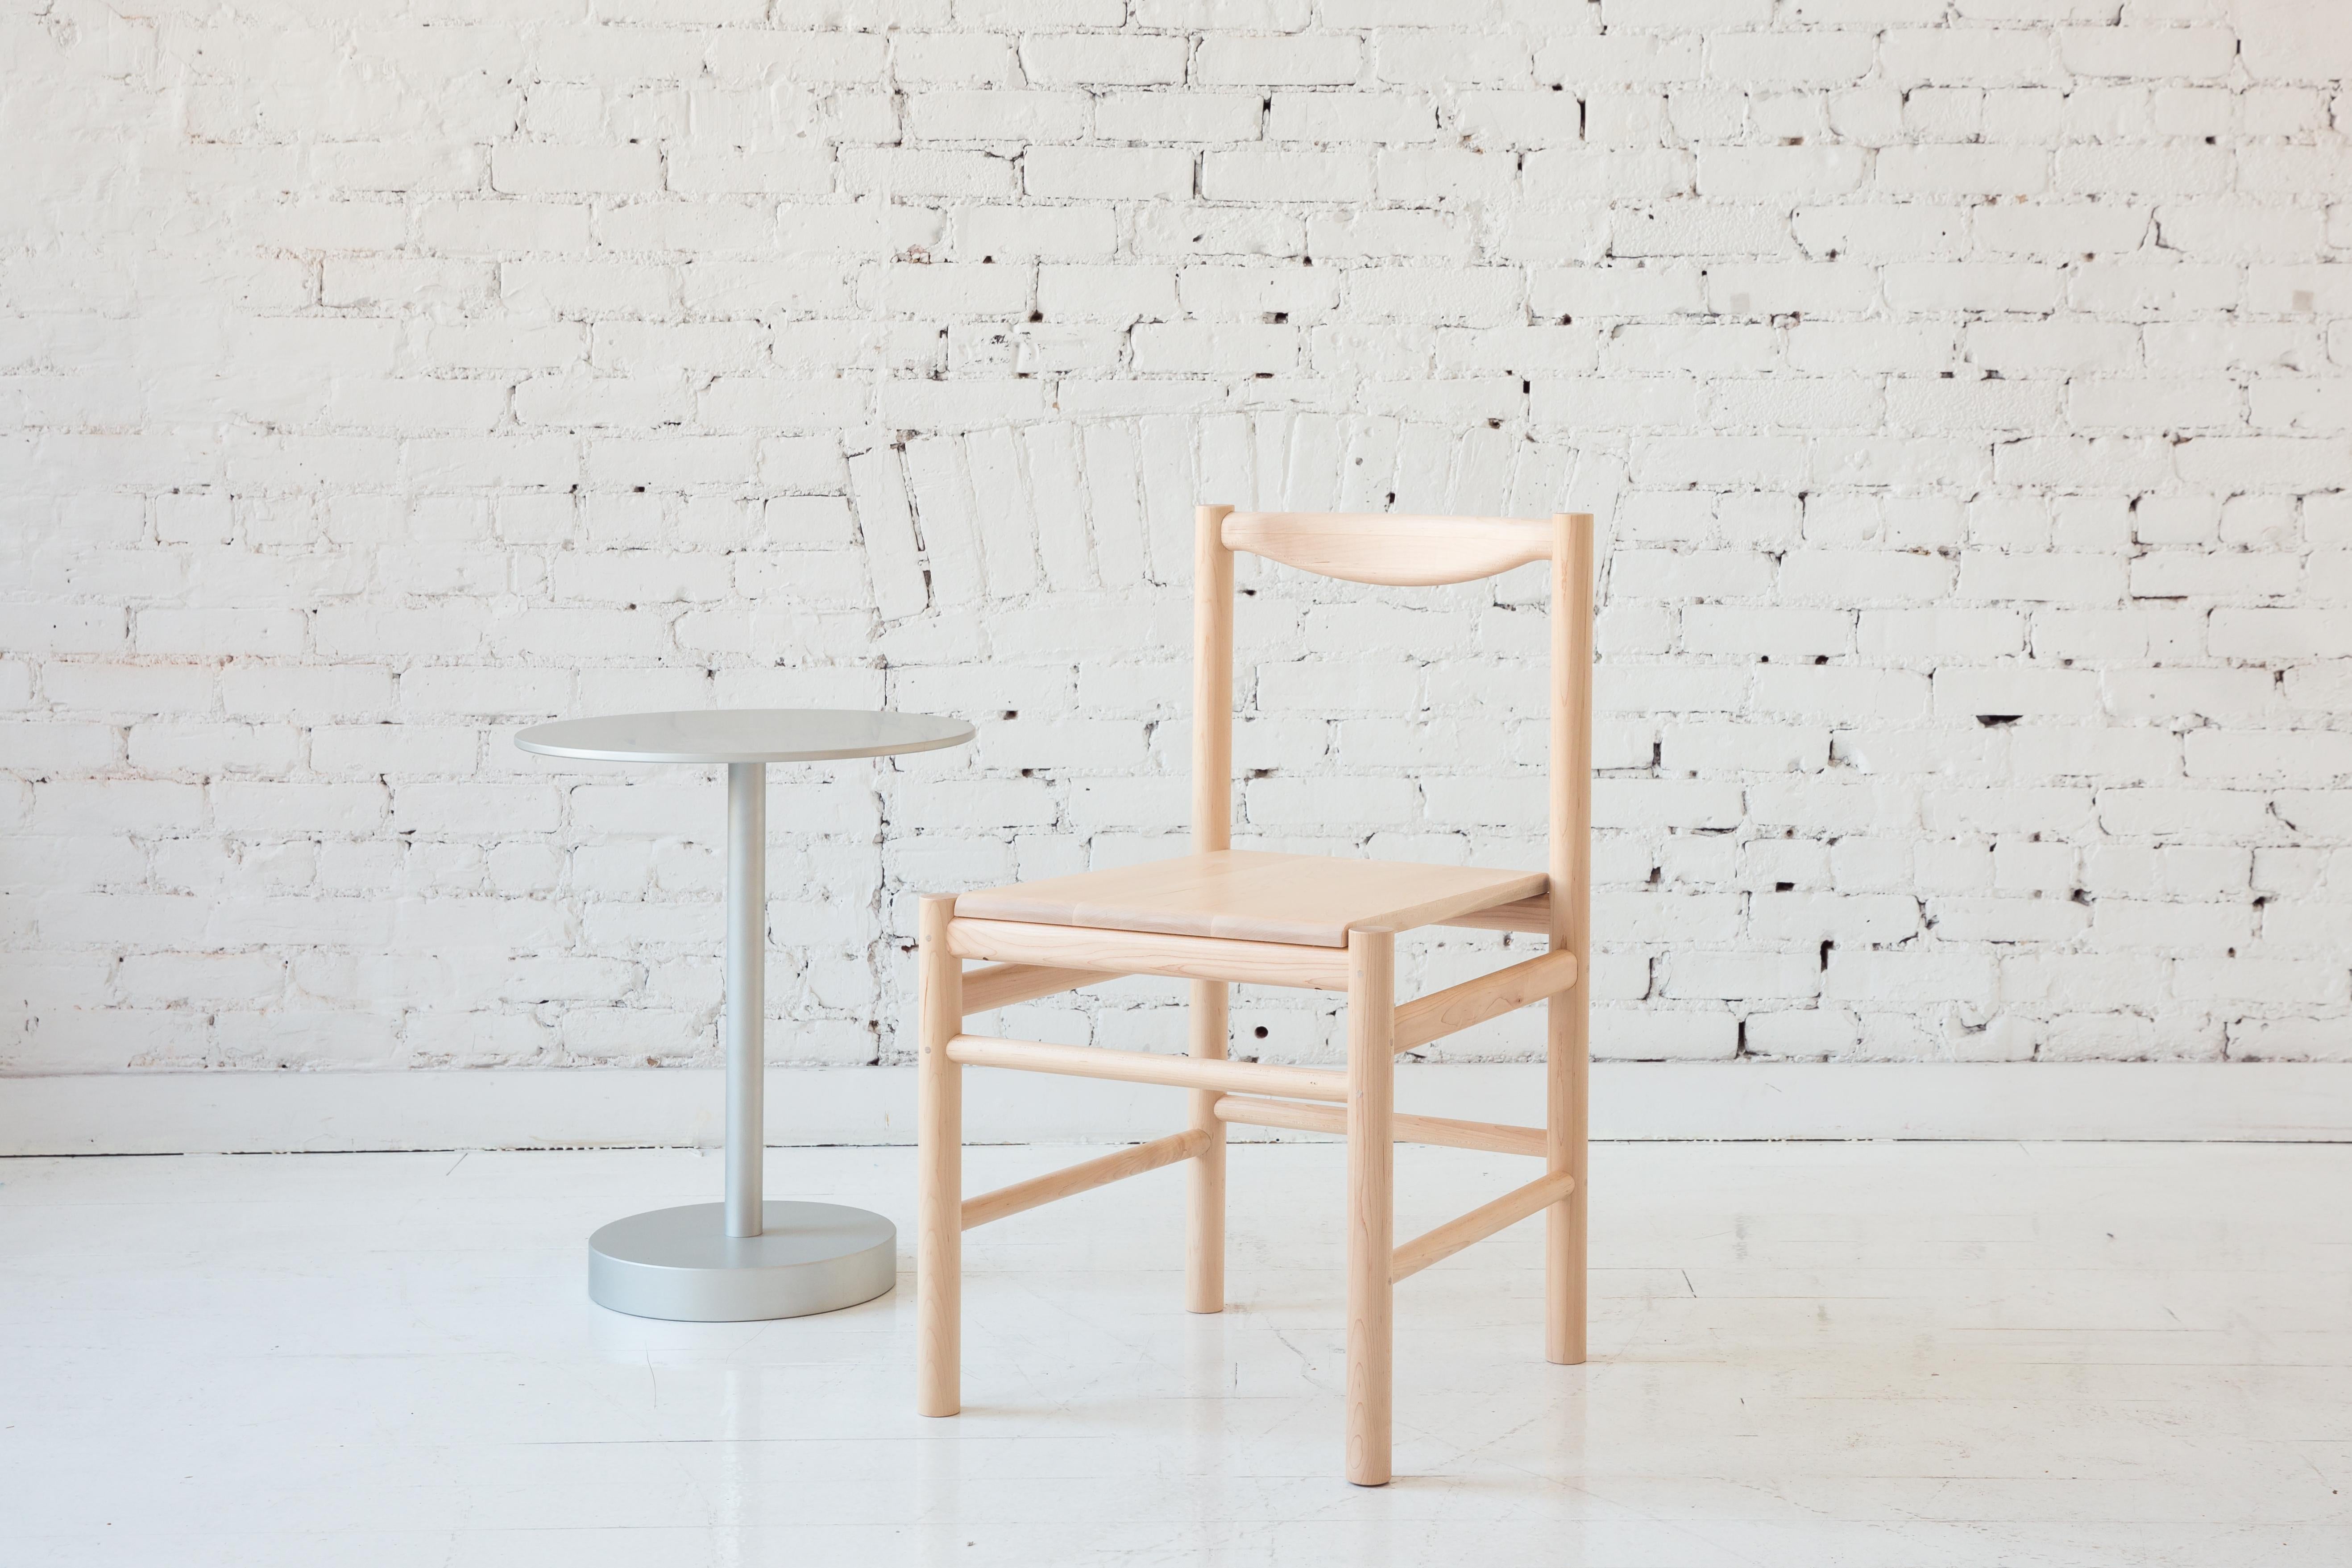 Chaise d'appoint en bois d'inspiration Shaker avec dossier confortable et profilé. Option pour une assise en bois simple ou une assise avec un coussin en cuir ou en shearling à profil bas. La simplicité de cette chaise lui permet d'être polyvalente